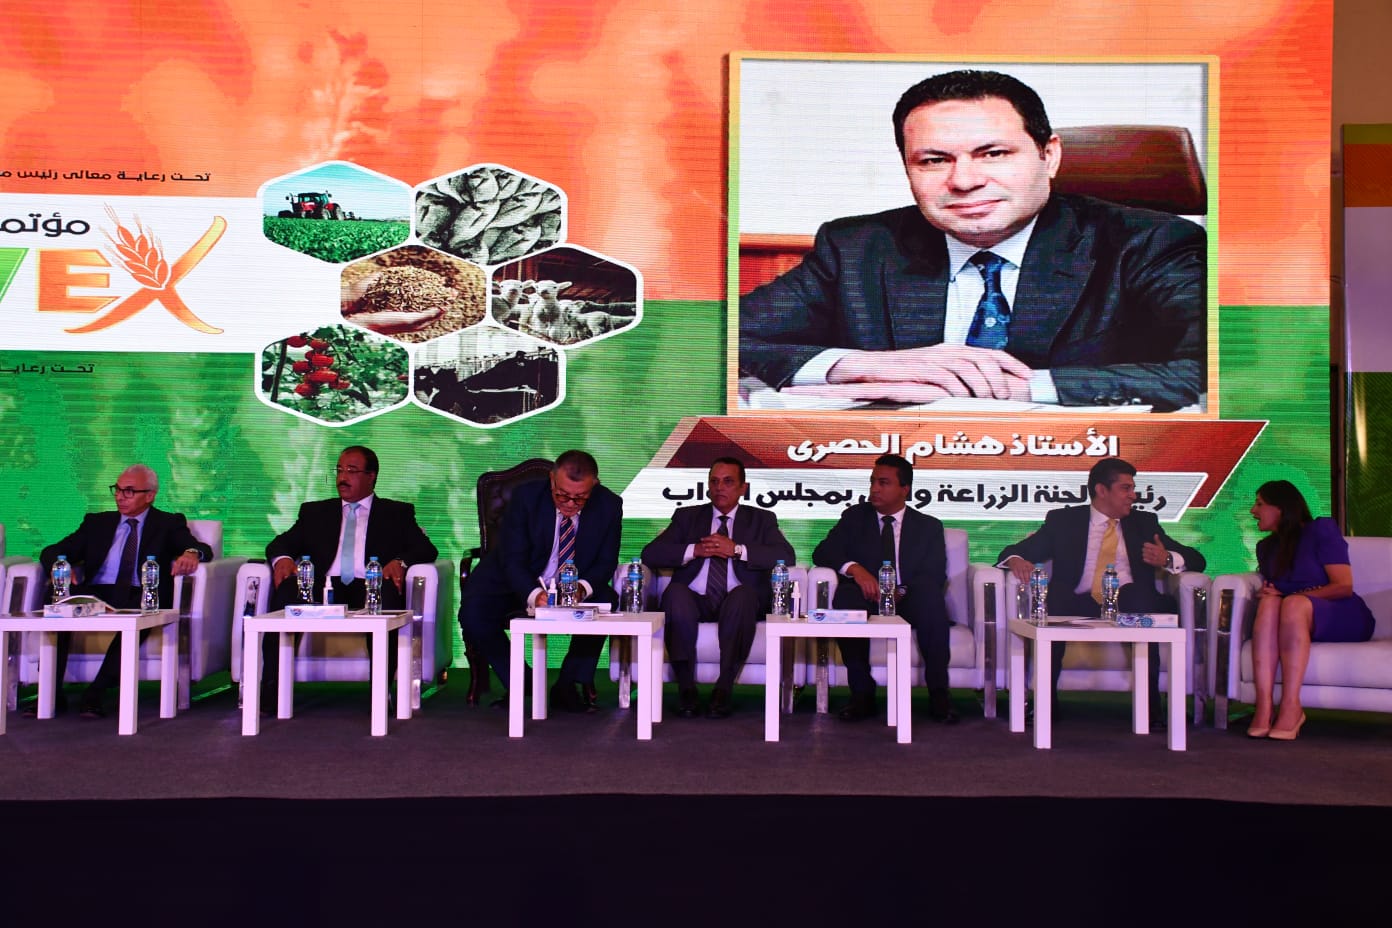 وزير التموين الدولة المصرية تعمل على التوسع الأفقي والرأسي في كافة المحاصيل الإستراتيجية